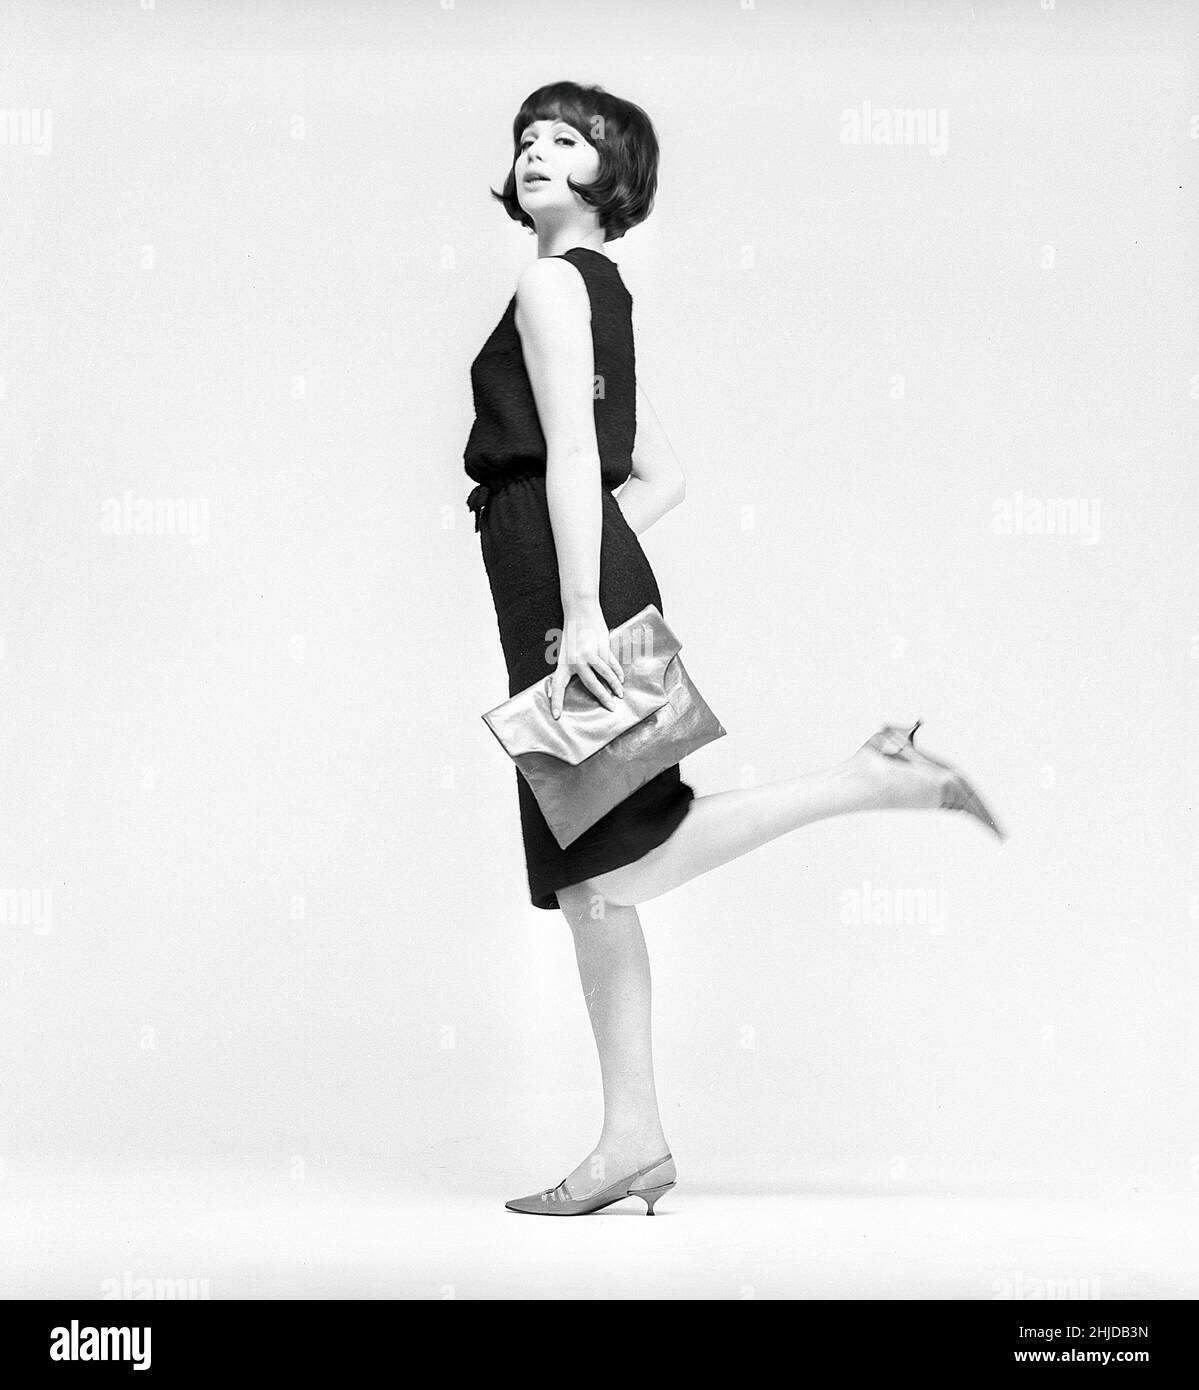 Dans le 1960s.Un modèle dans un ensemble typique de 1960s photographié dans un studio.Une robe populaire noire à la hauteur opportune juste en dessous de hauteur de Kneeheight.Suède 1960s Kristoffersson réf. CV21-9 Banque D'Images